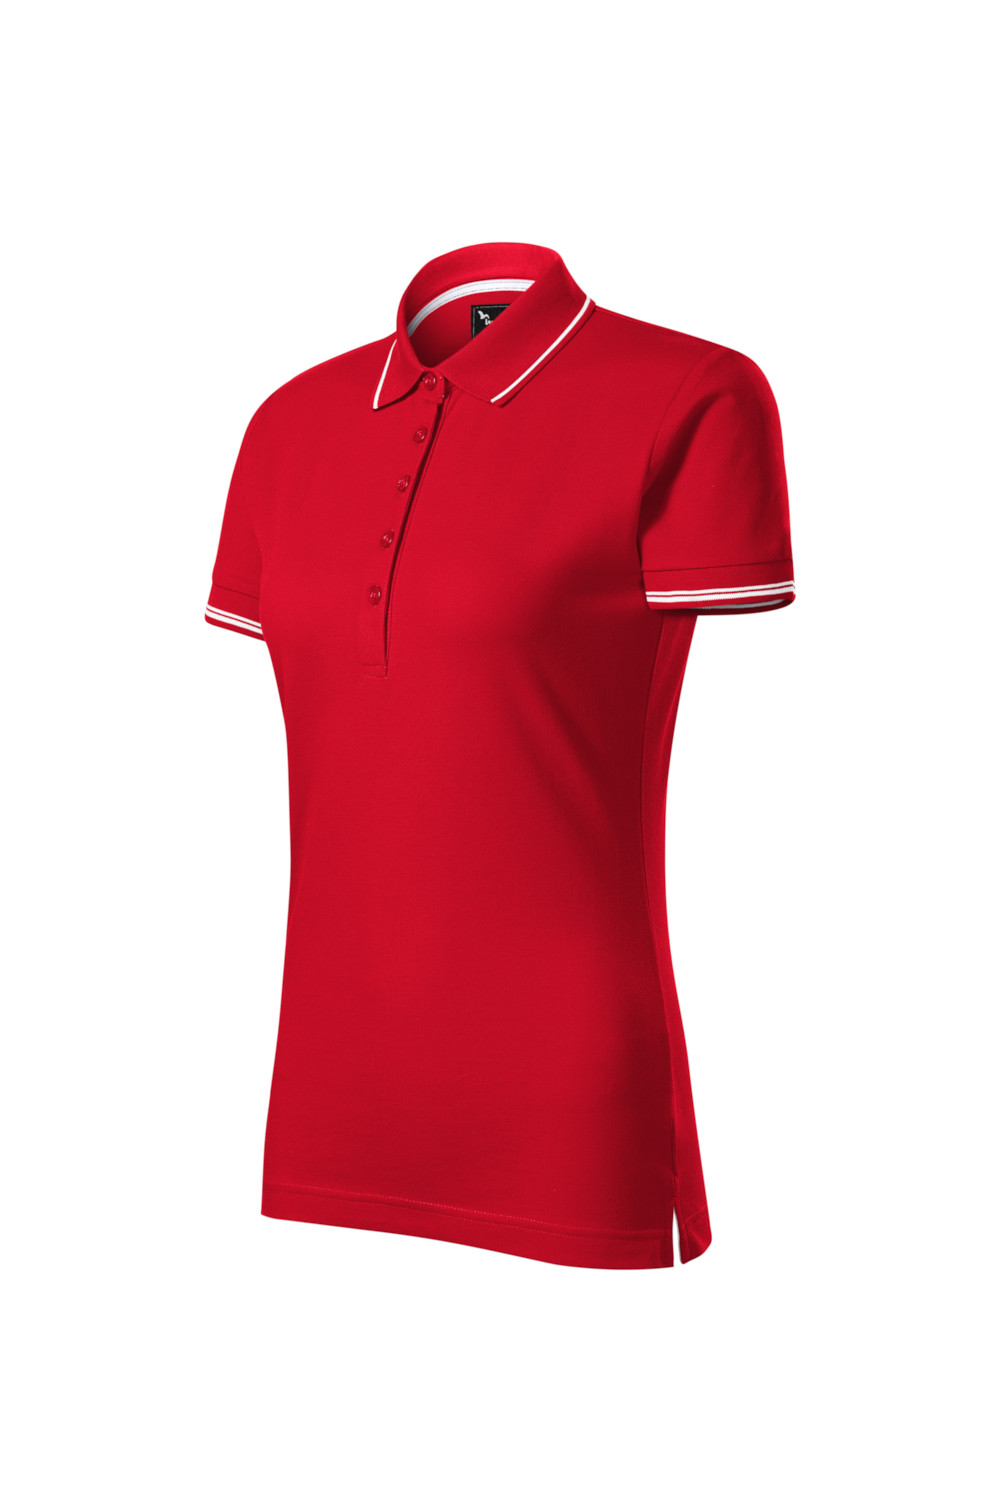 Koszulka Polo damska 95% bawełna 5% elastan 253 koszulki polo czerwony